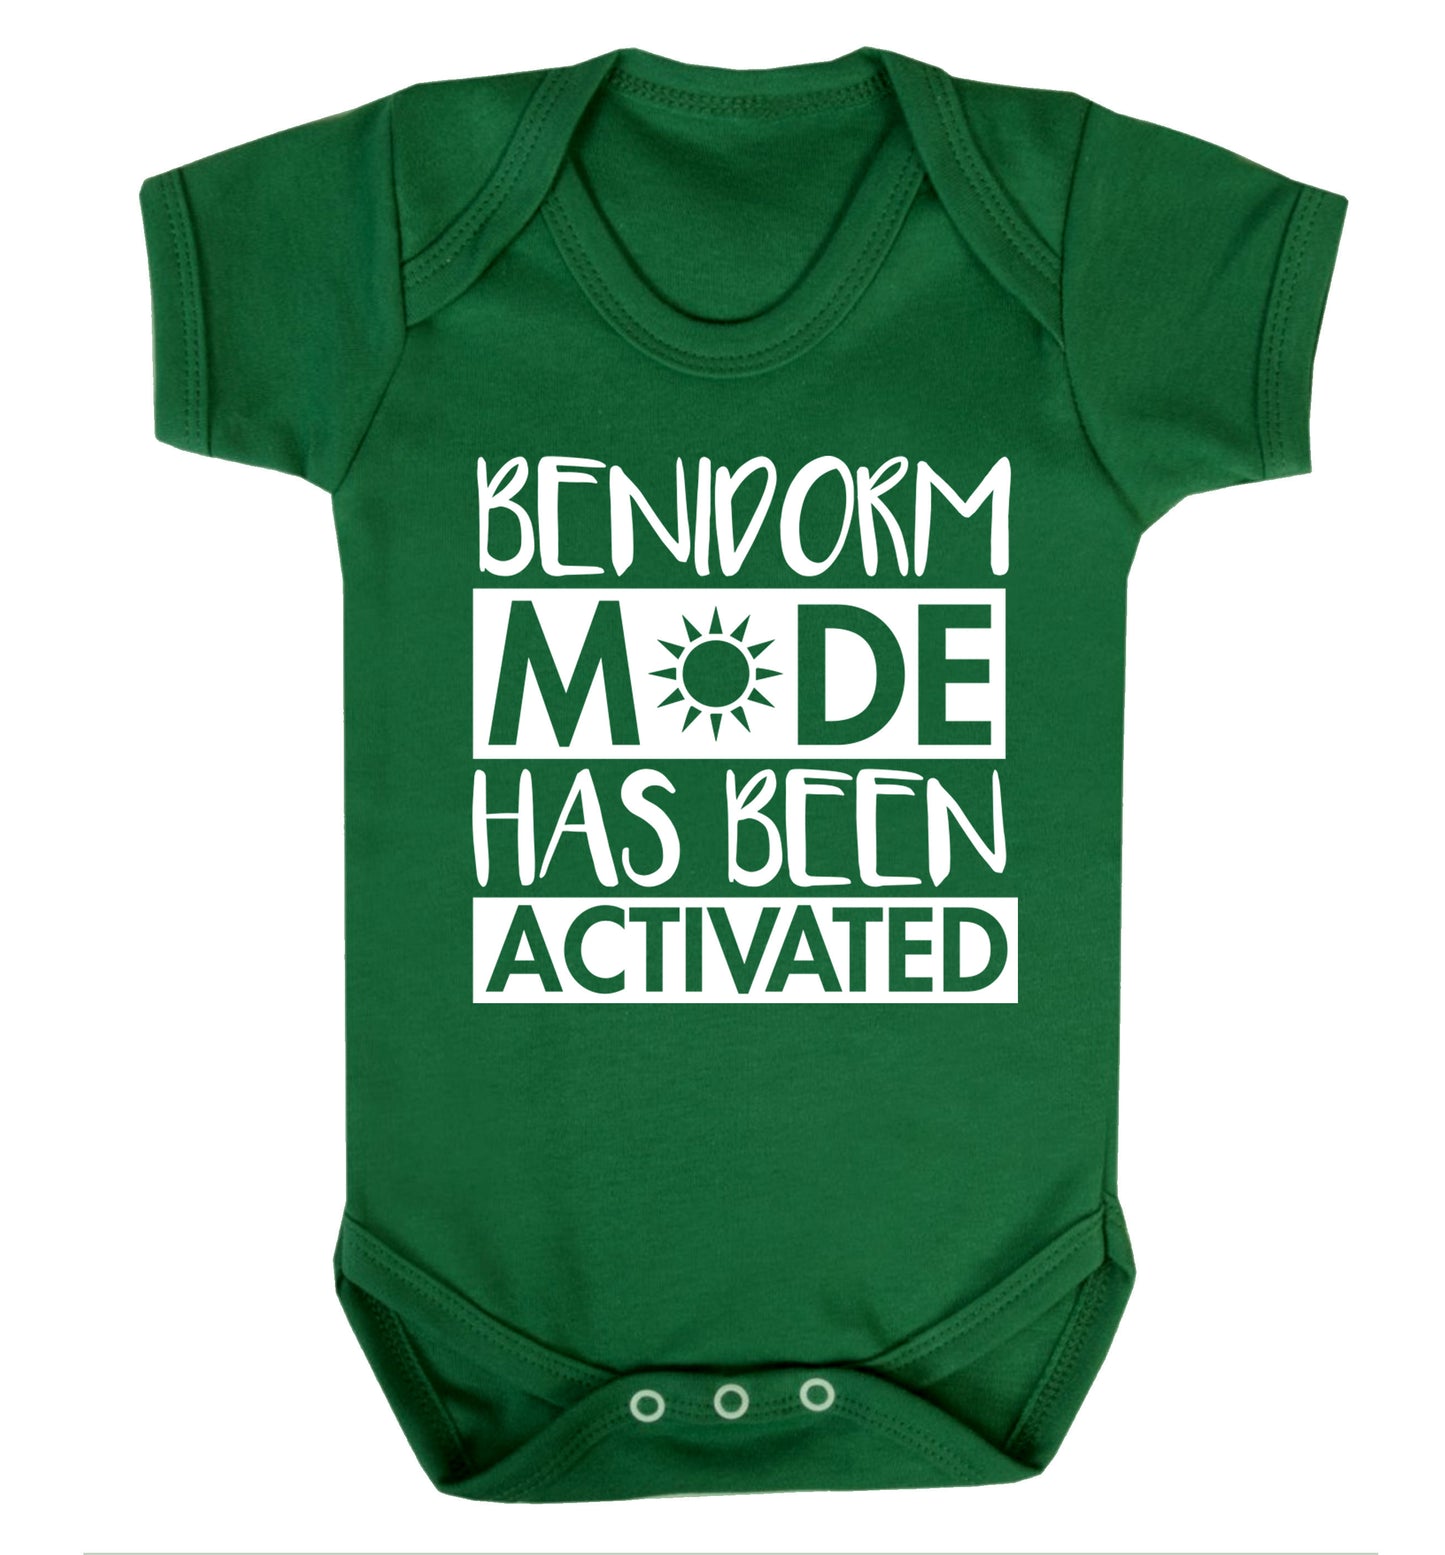 Benidorm mode has been activated Baby Vest green 18-24 months